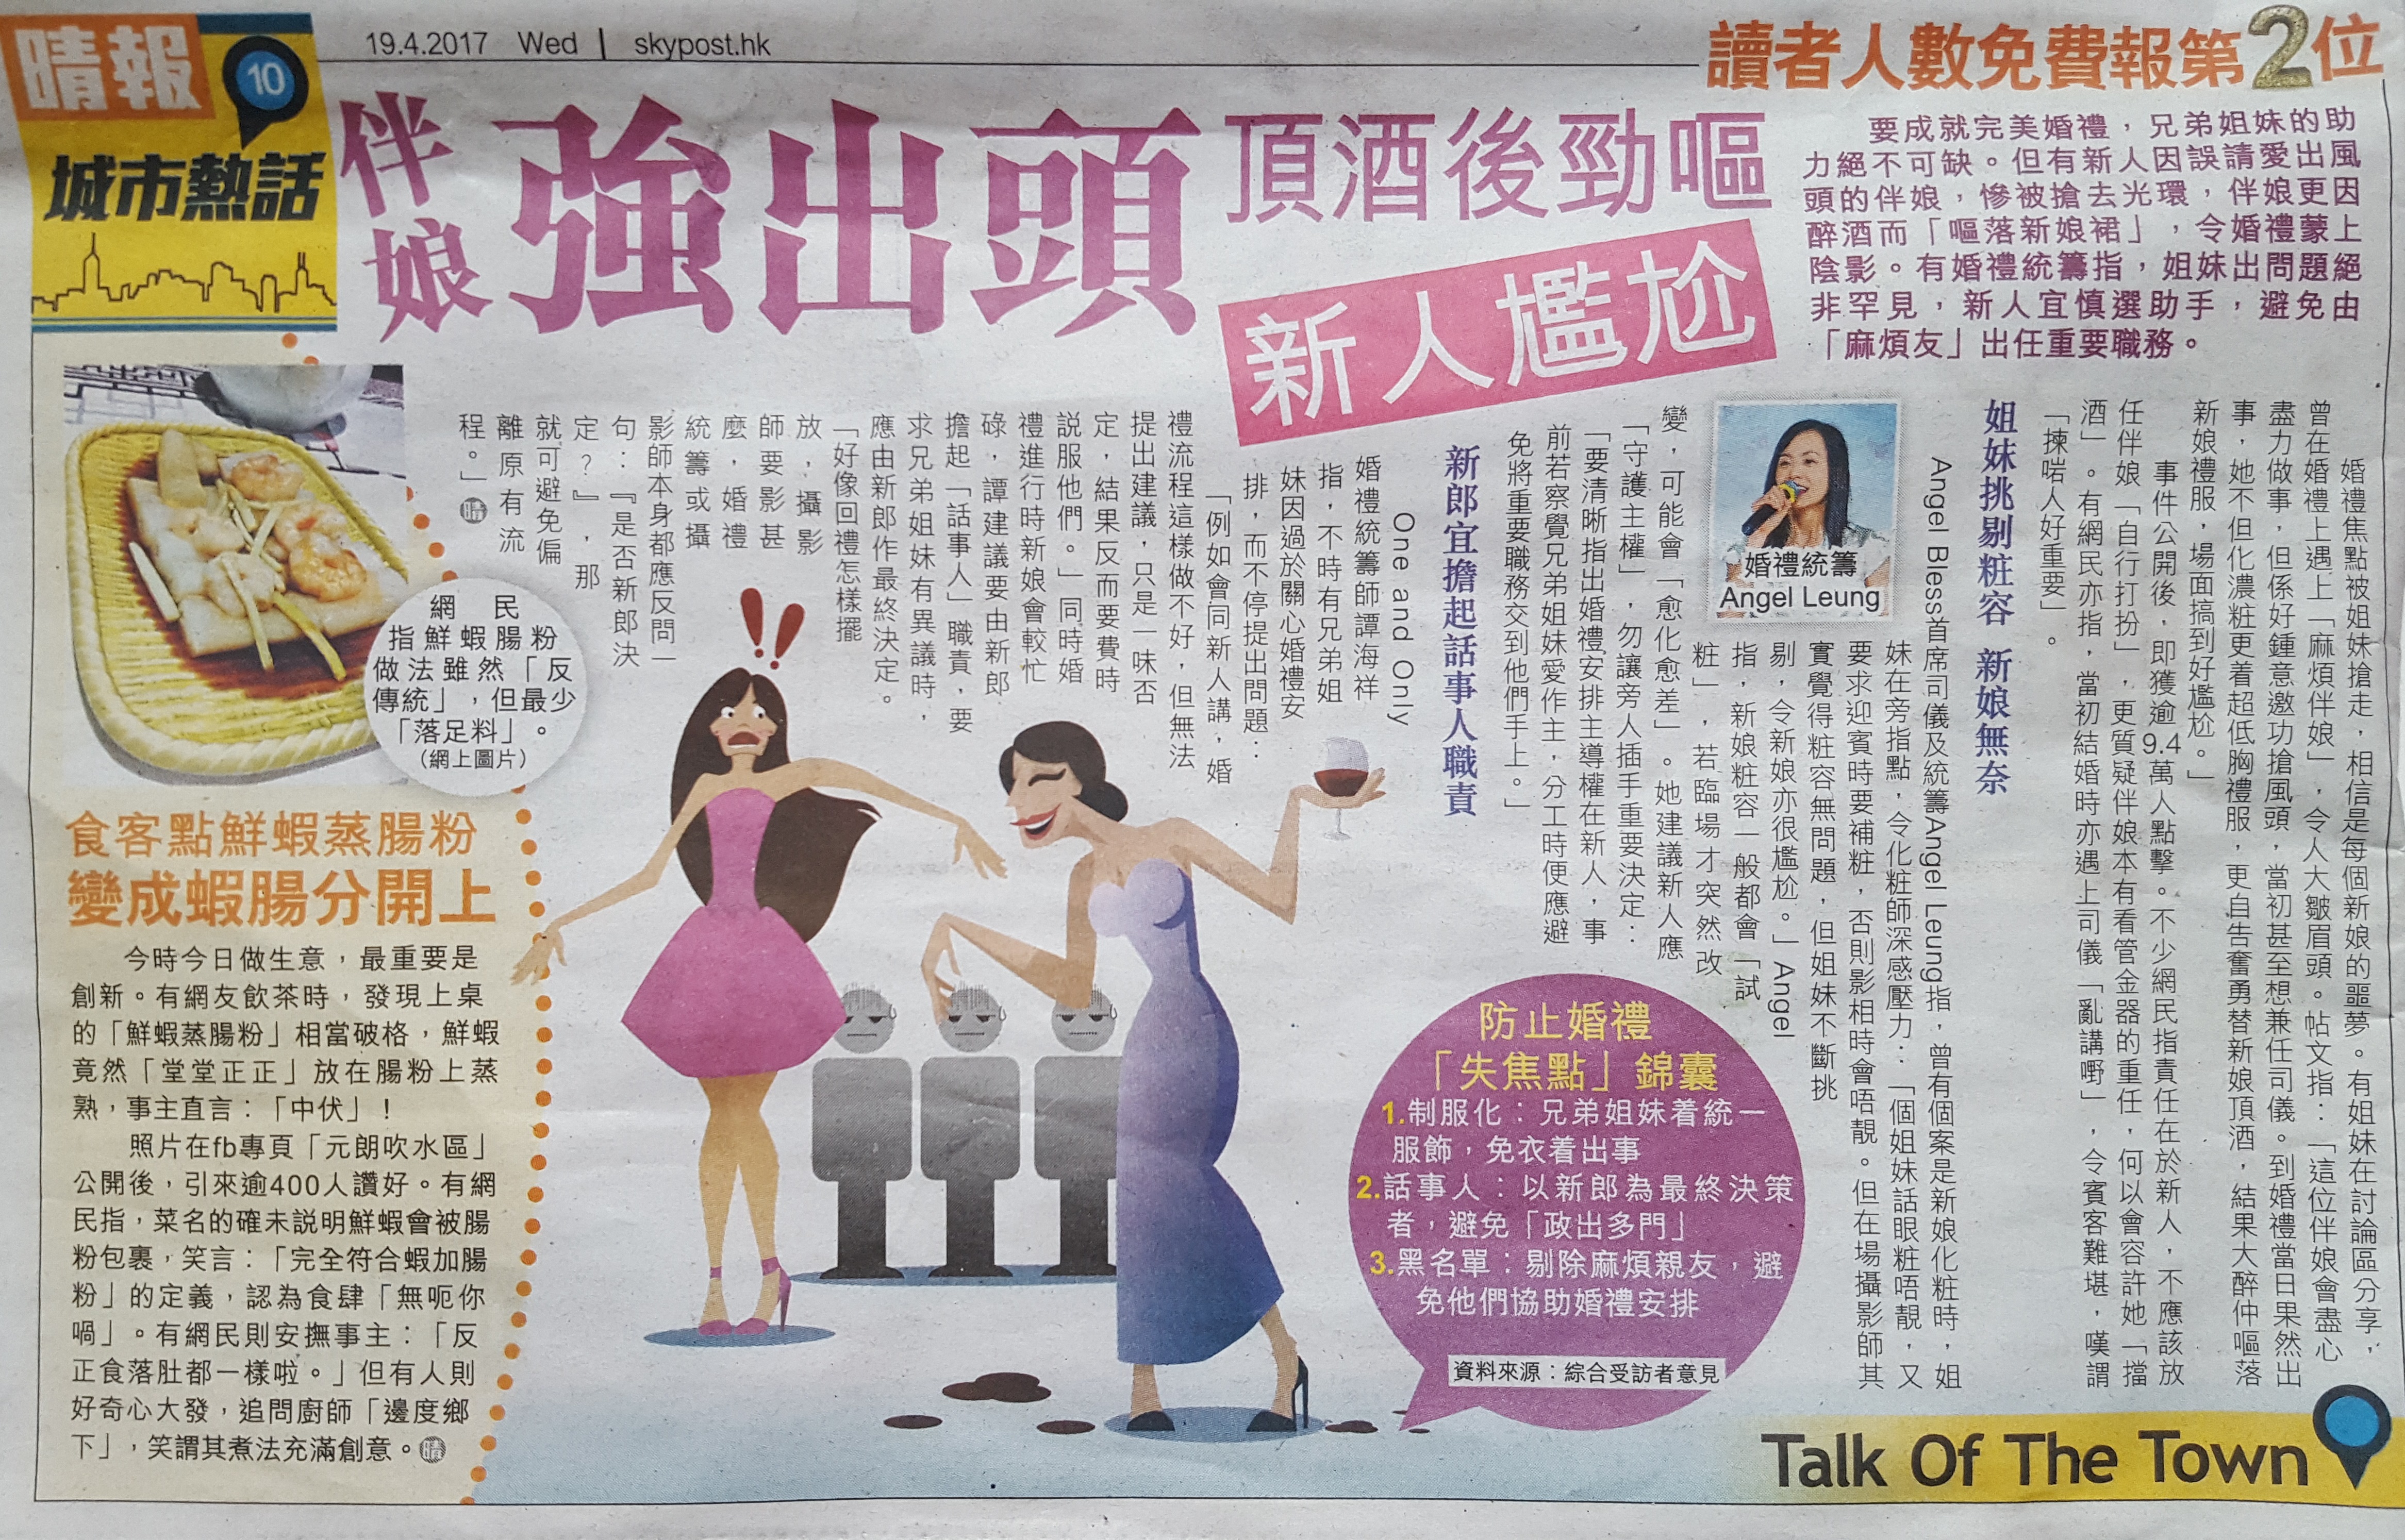 司儀媒體報導MC Angel Leung: 伴娘強出頭 頂酒後勁嘔 新人尷尬